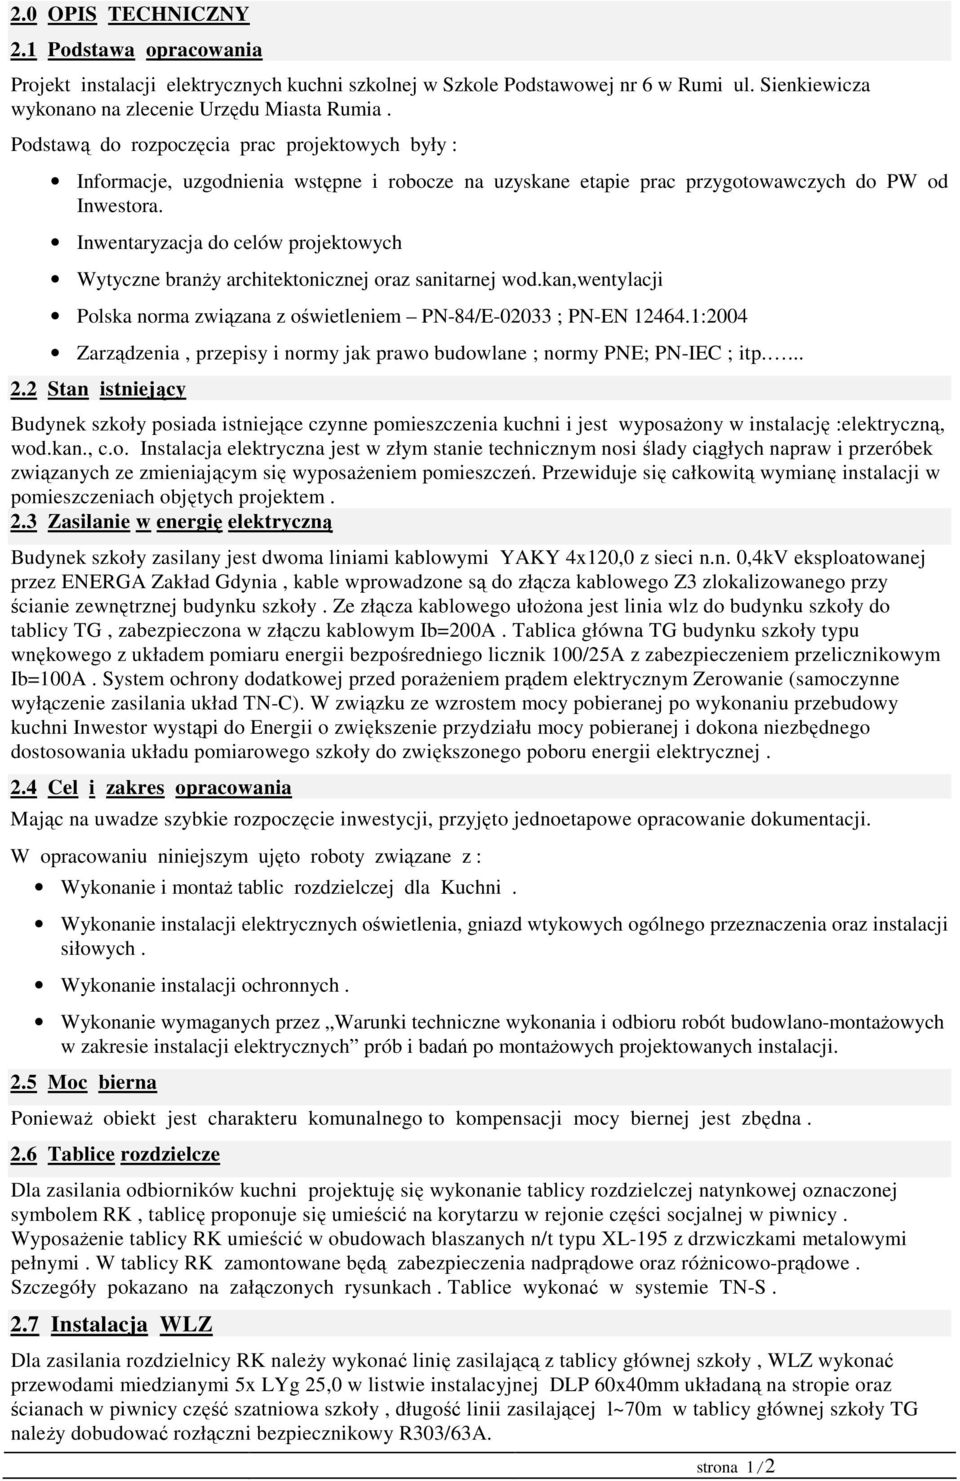 Inwentaryzacja do celów projektowych Wytyczne branży architektonicznej oraz sanitarnej wod.kan,wentylacji Polska norma związana z oświetleniem PN-84/E-02033 ; PN-EN 12464.